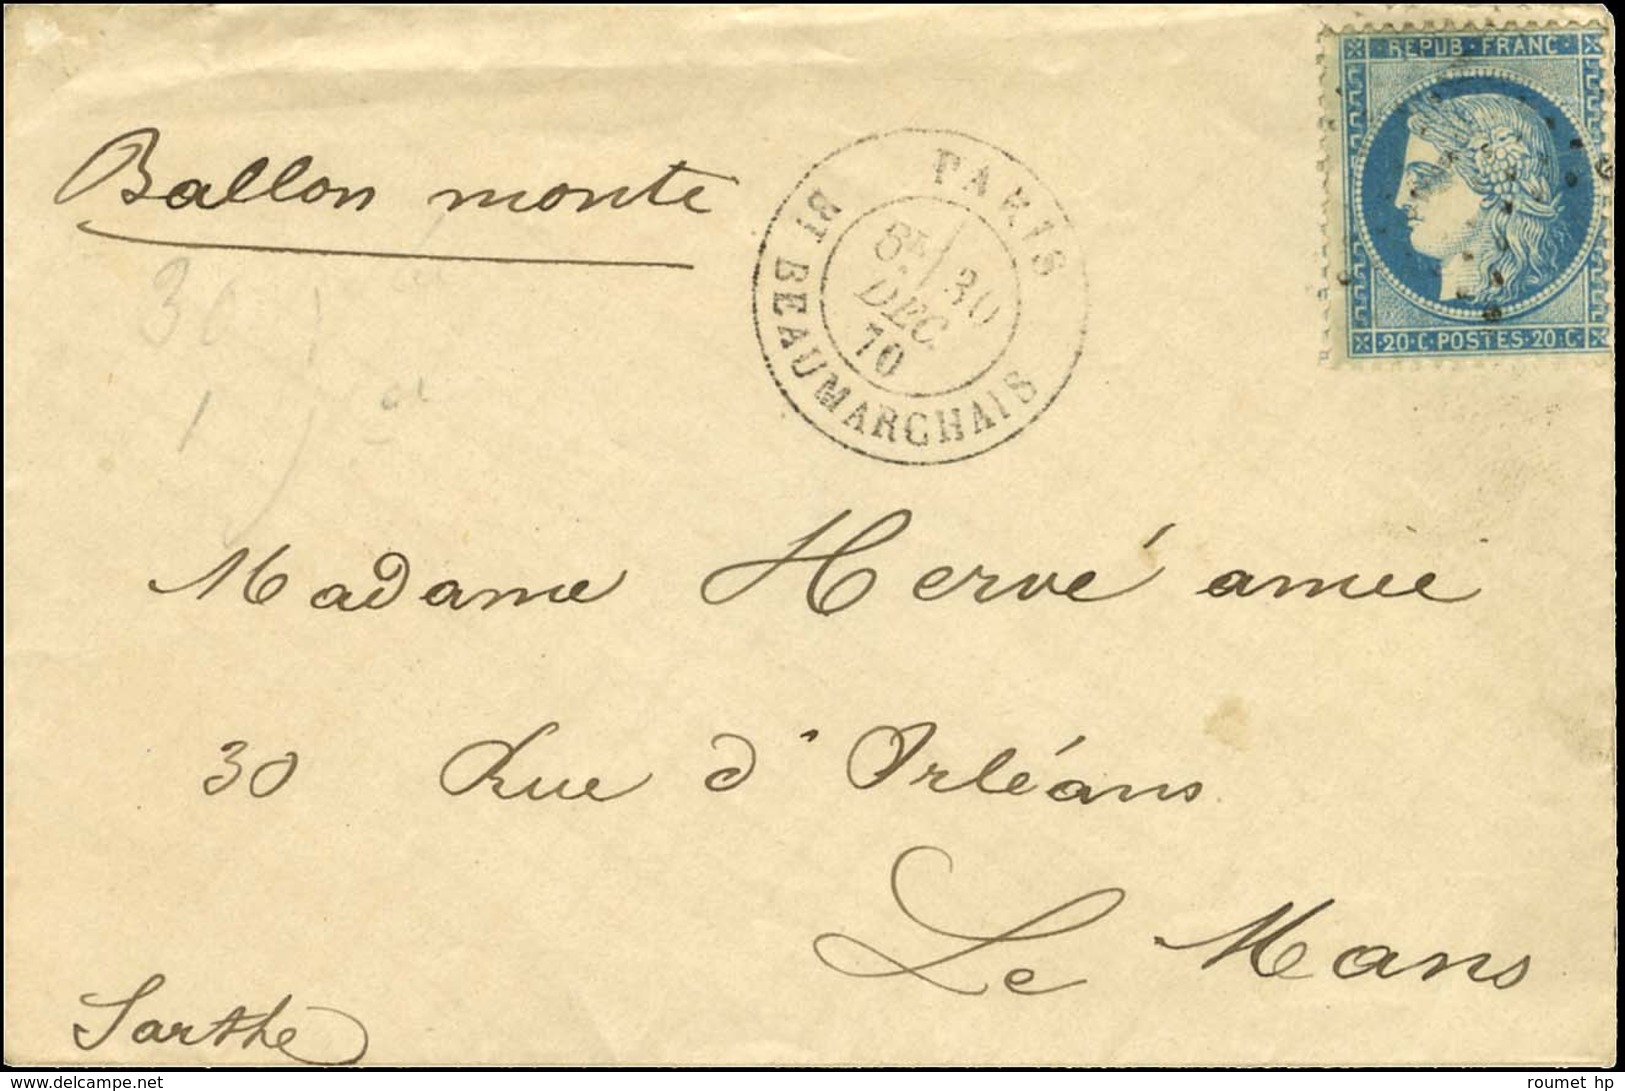 Etoile 12 / N° 37 Càd PARIS / BT BEAUMARCHAIS 30 DEC. 70 Sur Lettre Sans Texte Pour Le Mans. Au Verso, Càd D'arrivée 1 J - Krieg 1870